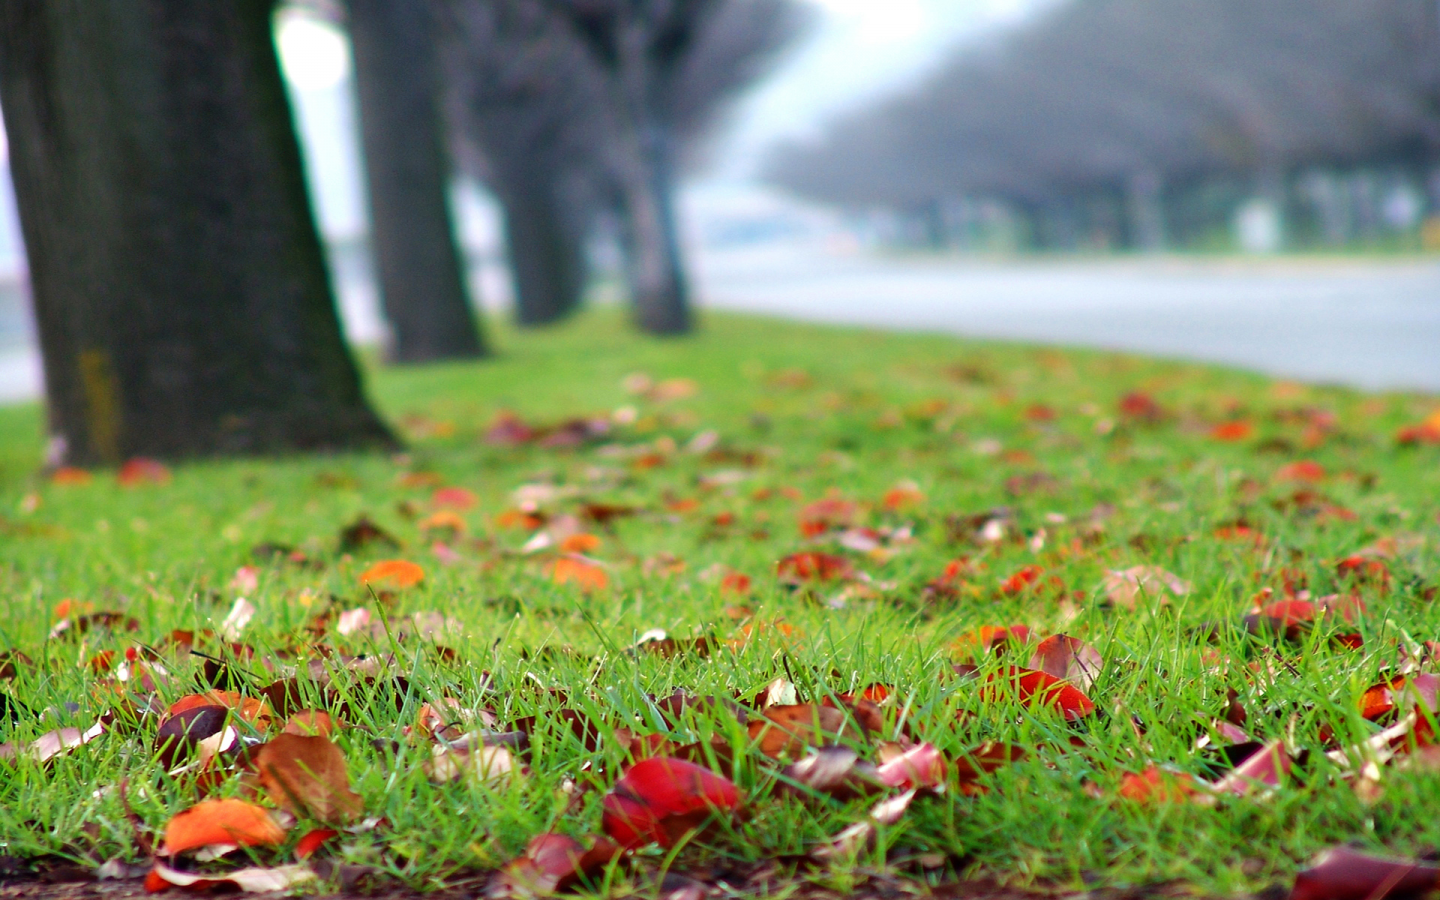 осень, размытость, разноцветные, дорога, посадки, опавшие листья, деревья, время года, газон, трава